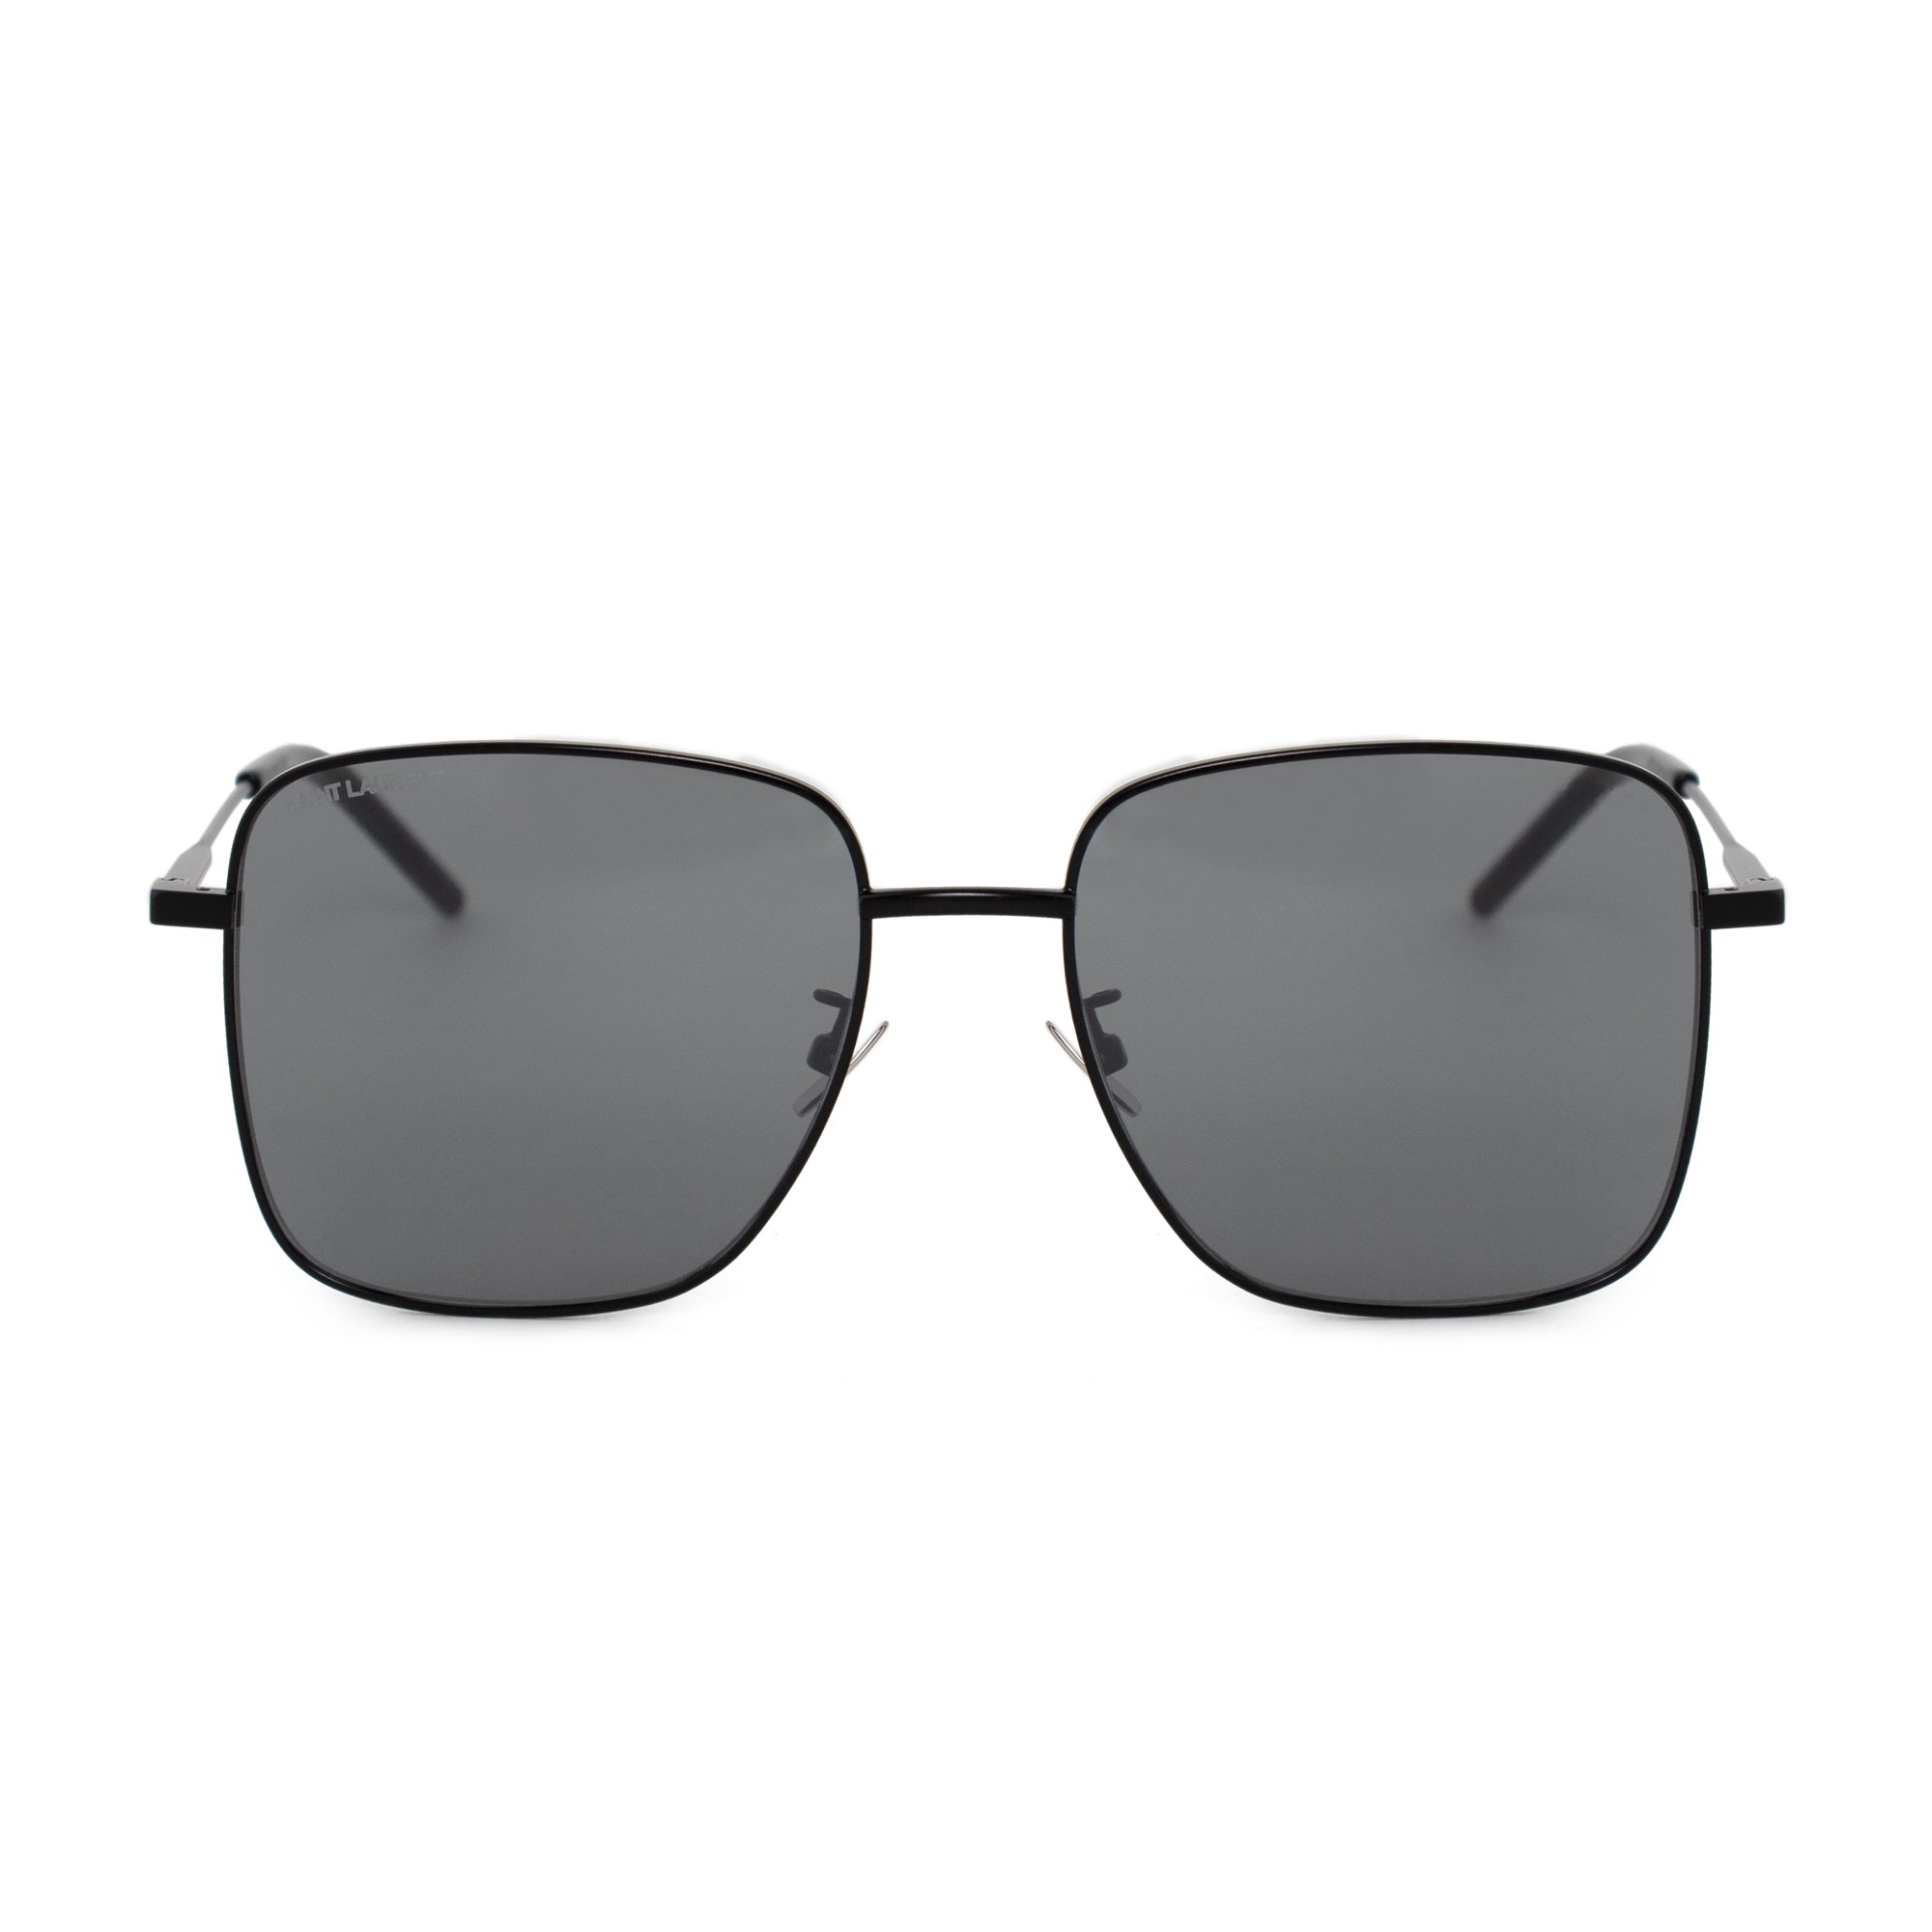 Saint Laurent Square Sunglasses SL312 004 57